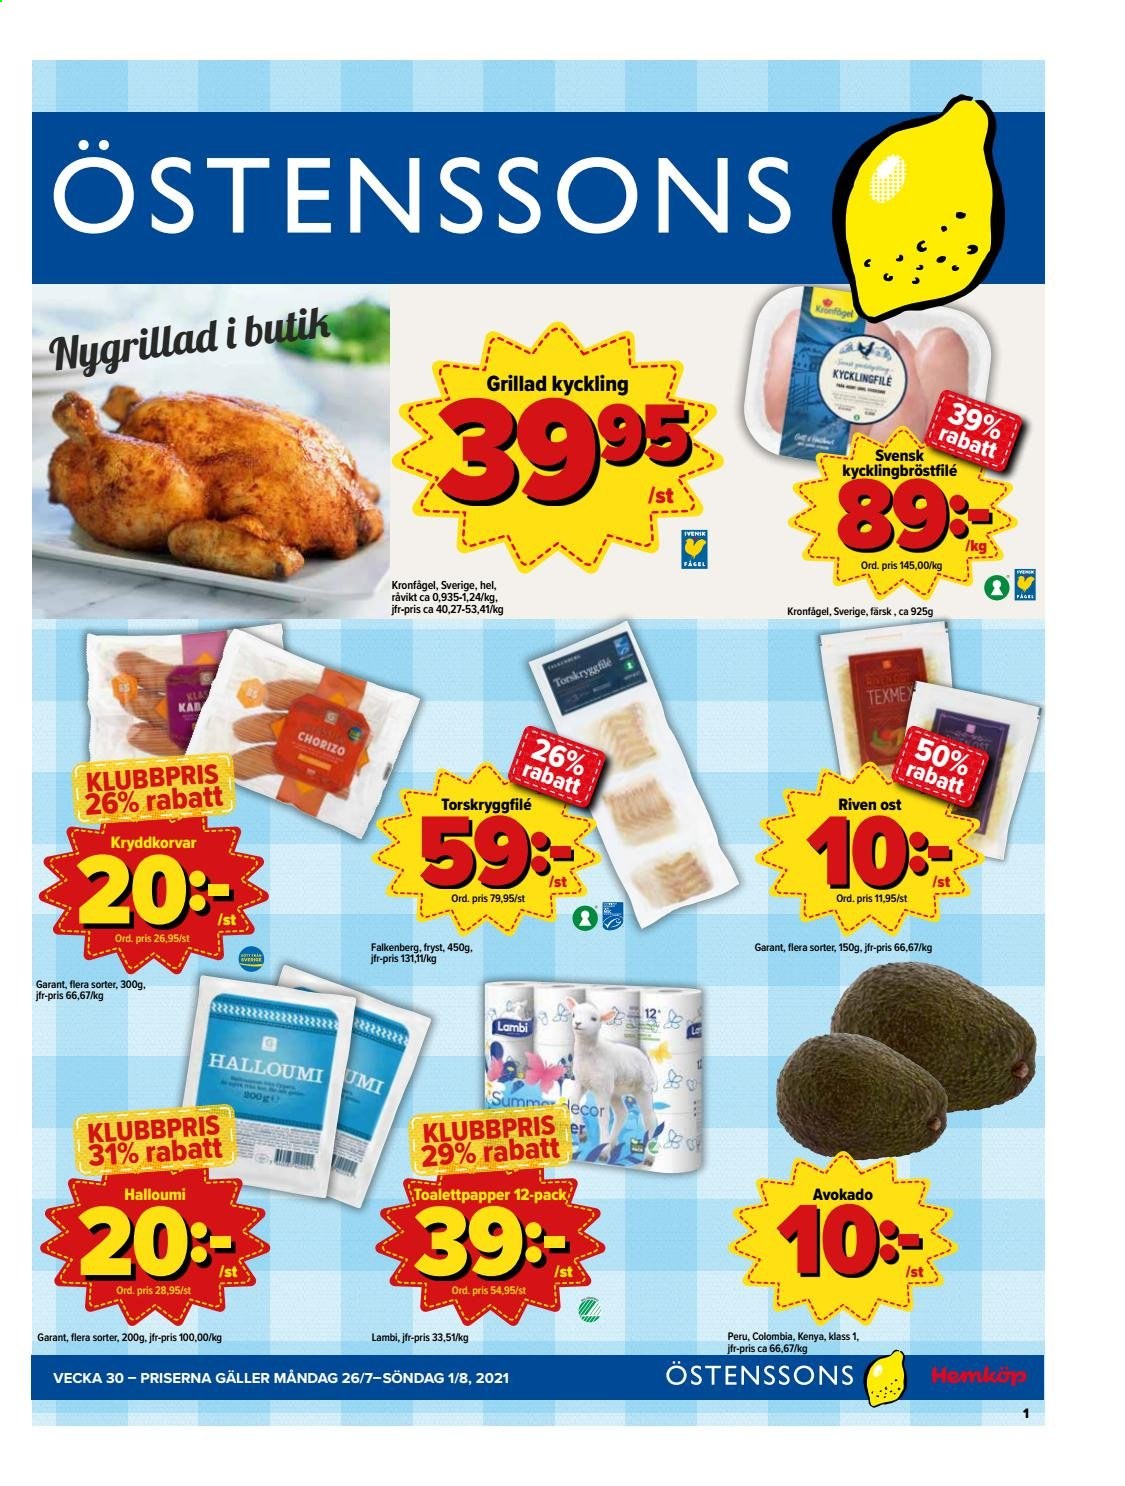 Östenssons reklamblad - 26/7 2021 - 1/8 2021.